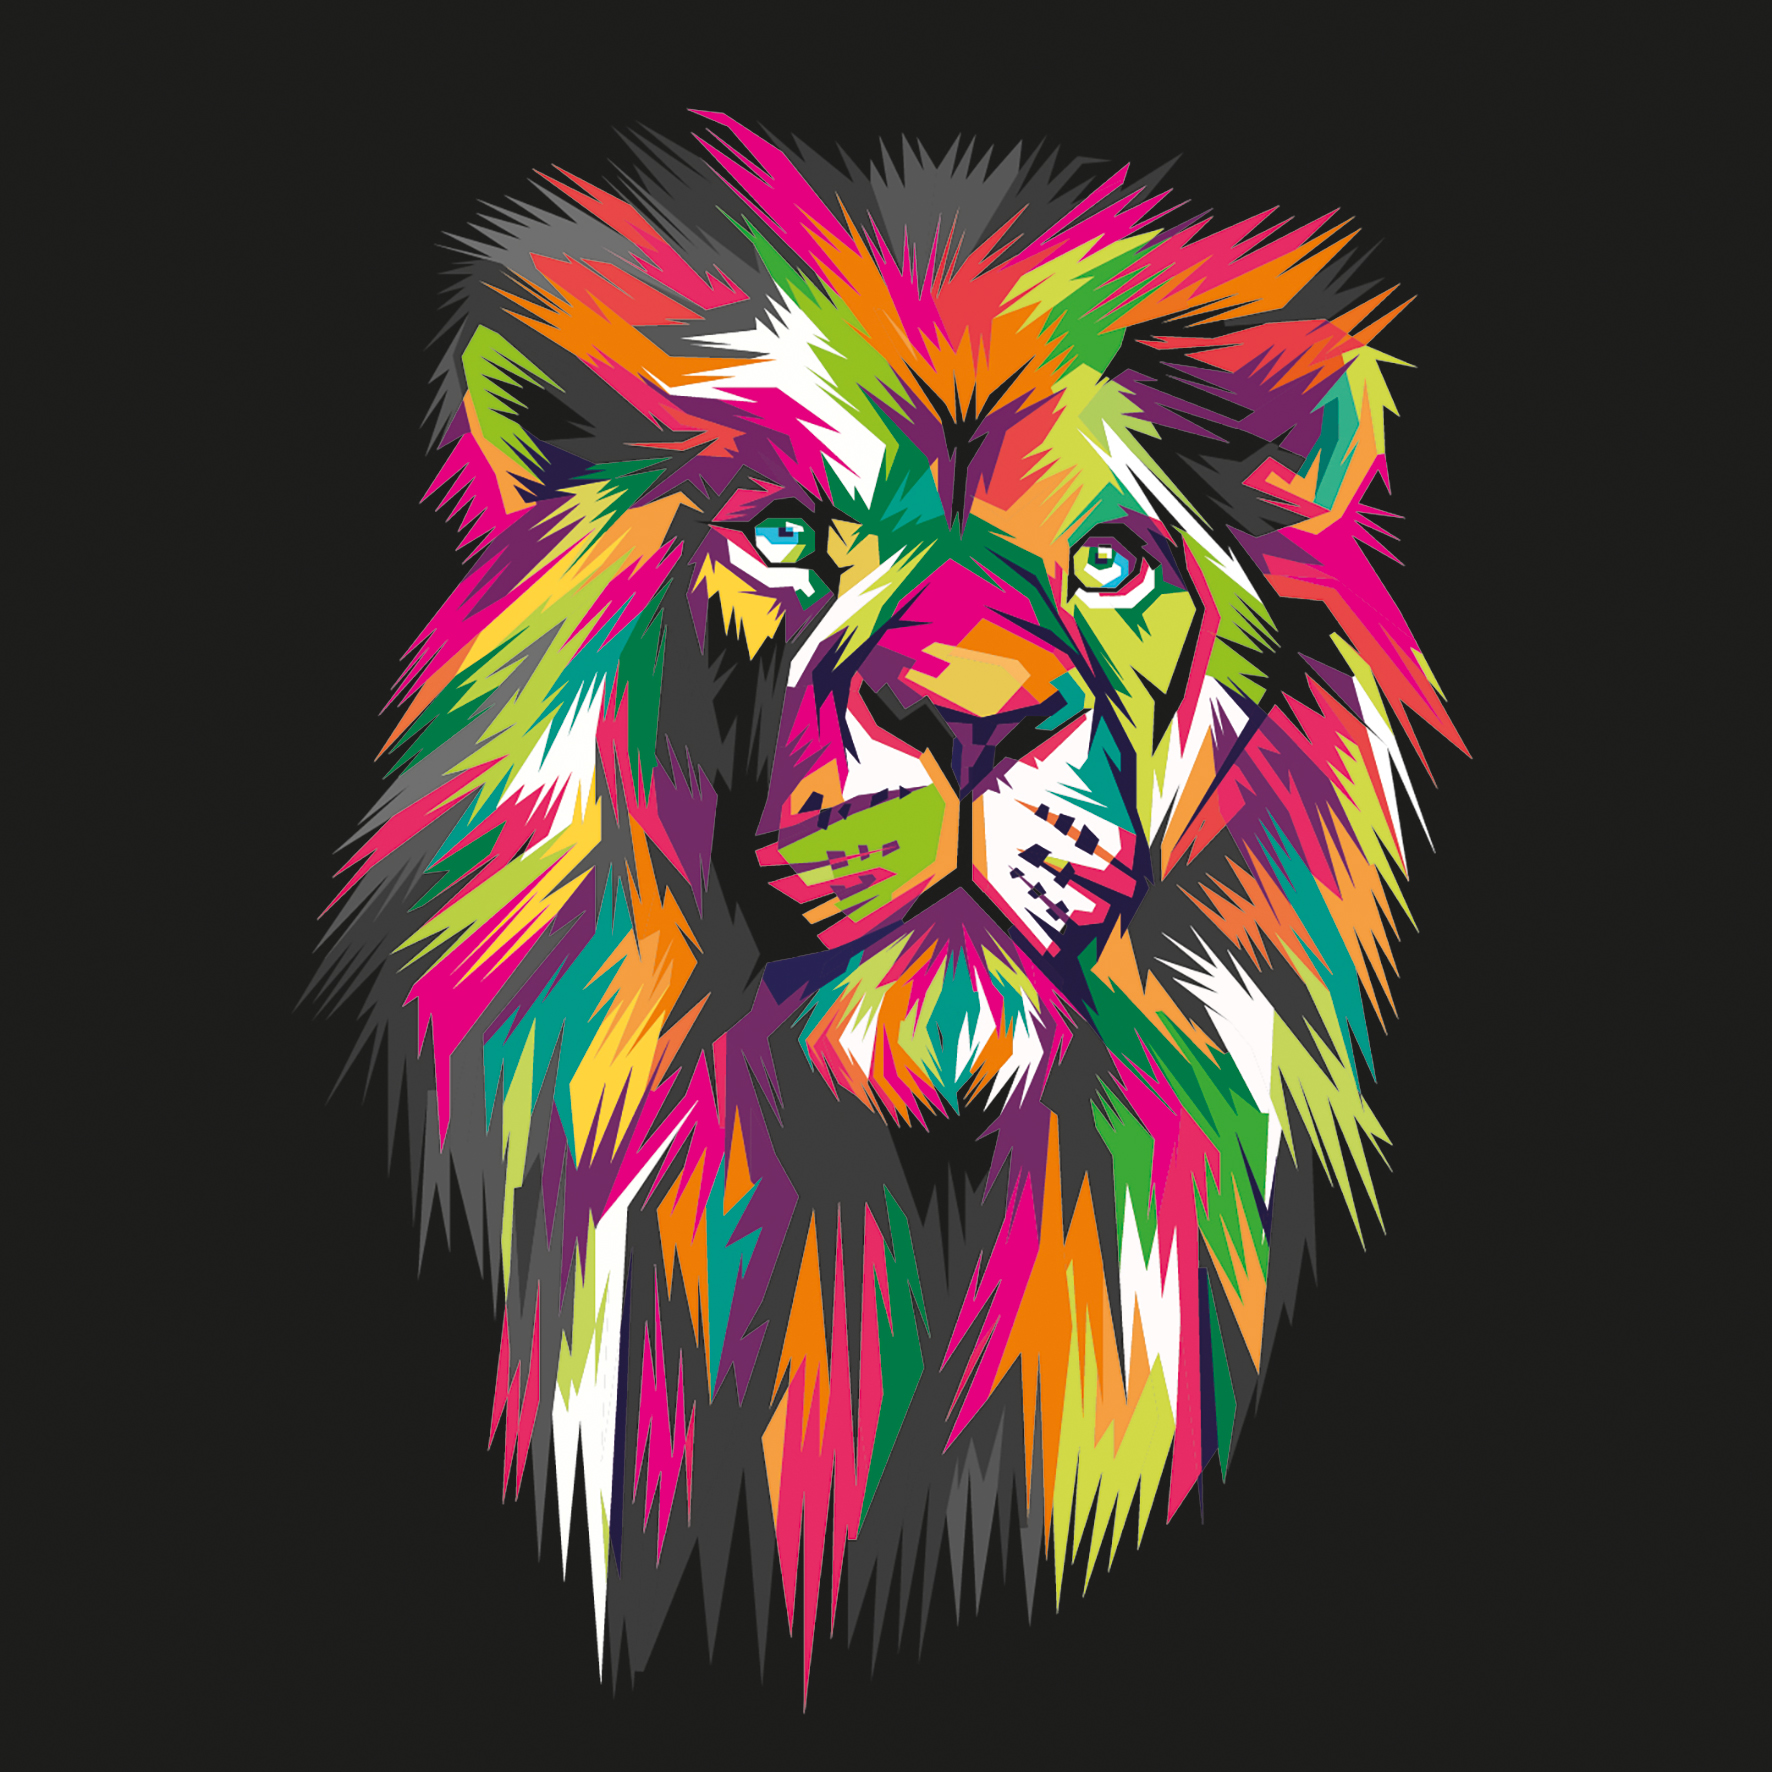 Alu-Art Classic, Colorful Lion Head II